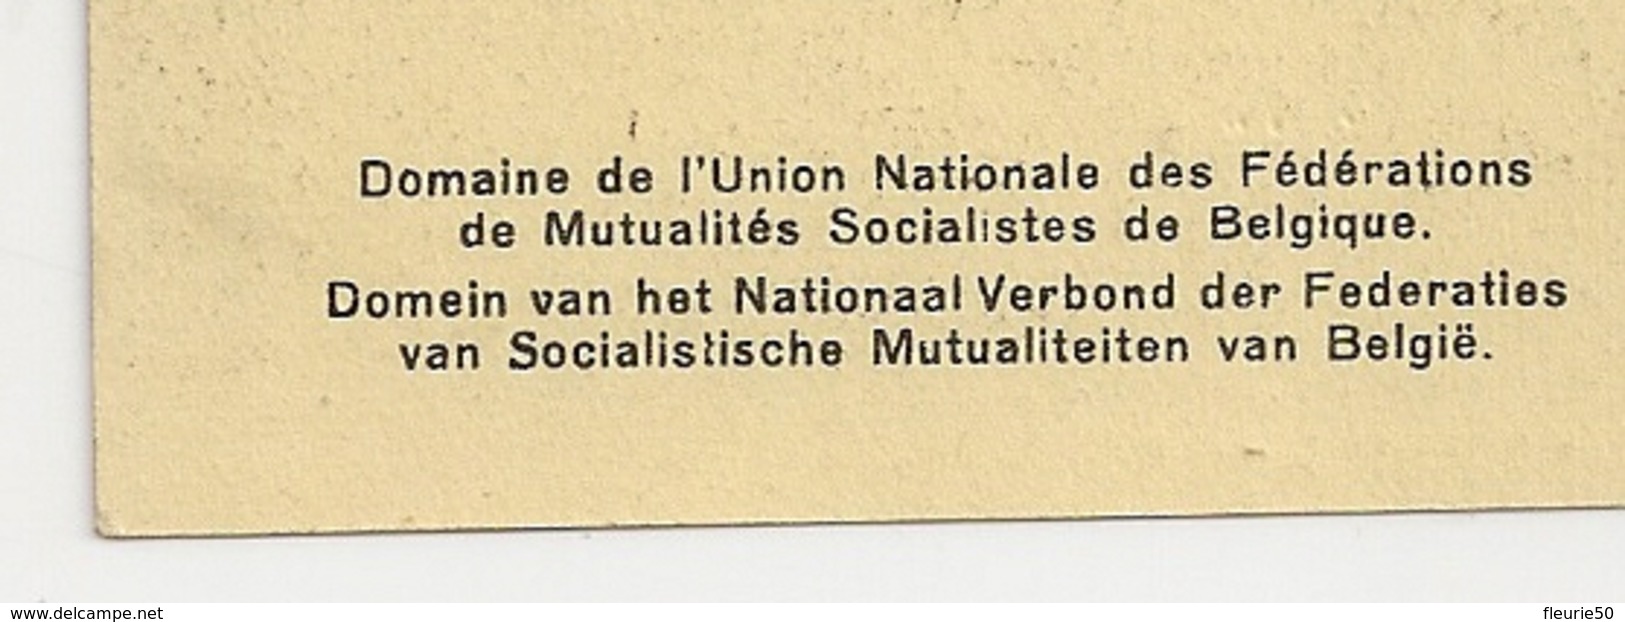 TRIBOMONT (Herve; Verviers; Pépinster)Domaine De L'Union Nationale Des Fédérations De Mutualités Socialistes De Belgique - Herve